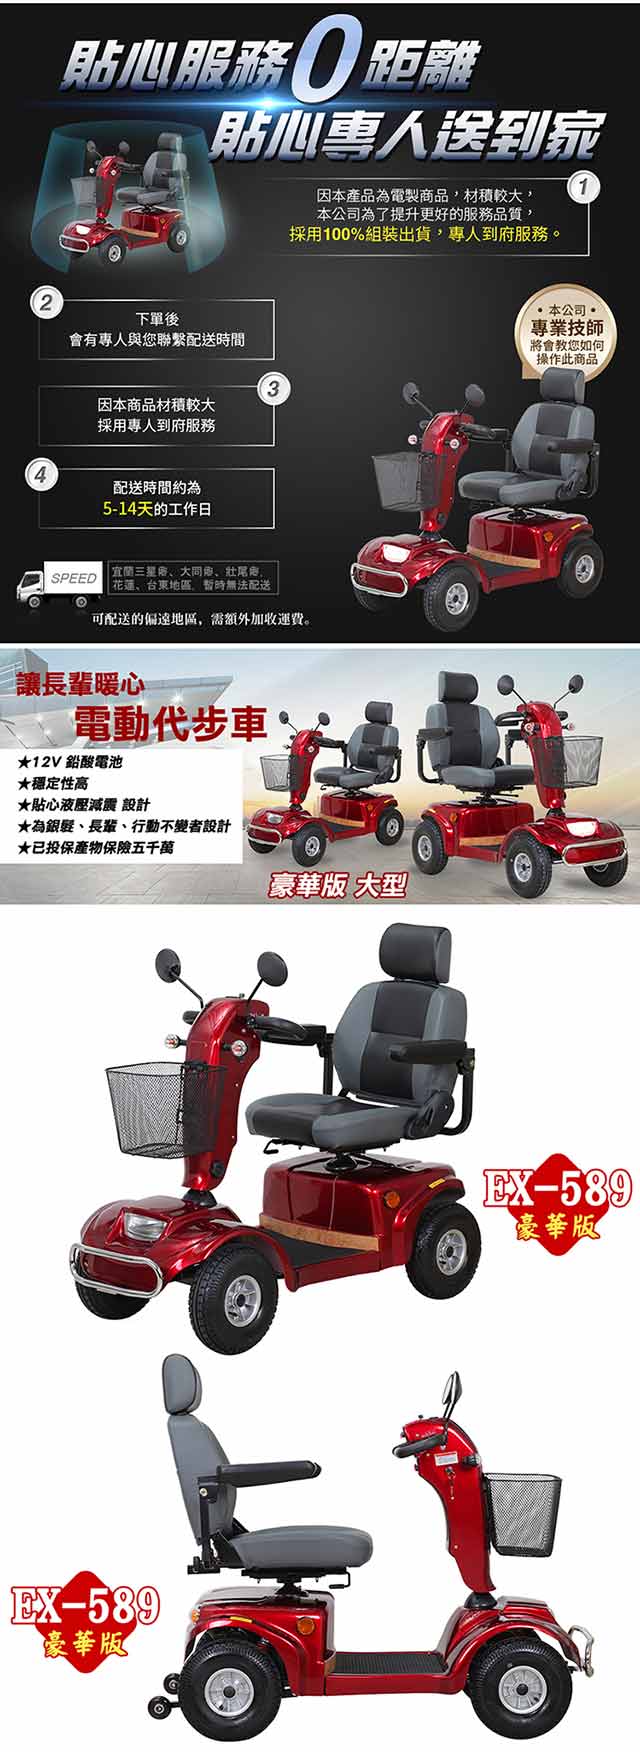 【捷馬科技 JEMA】EX-589 豪華版 大型型 輕鬆代步 四輪電動車